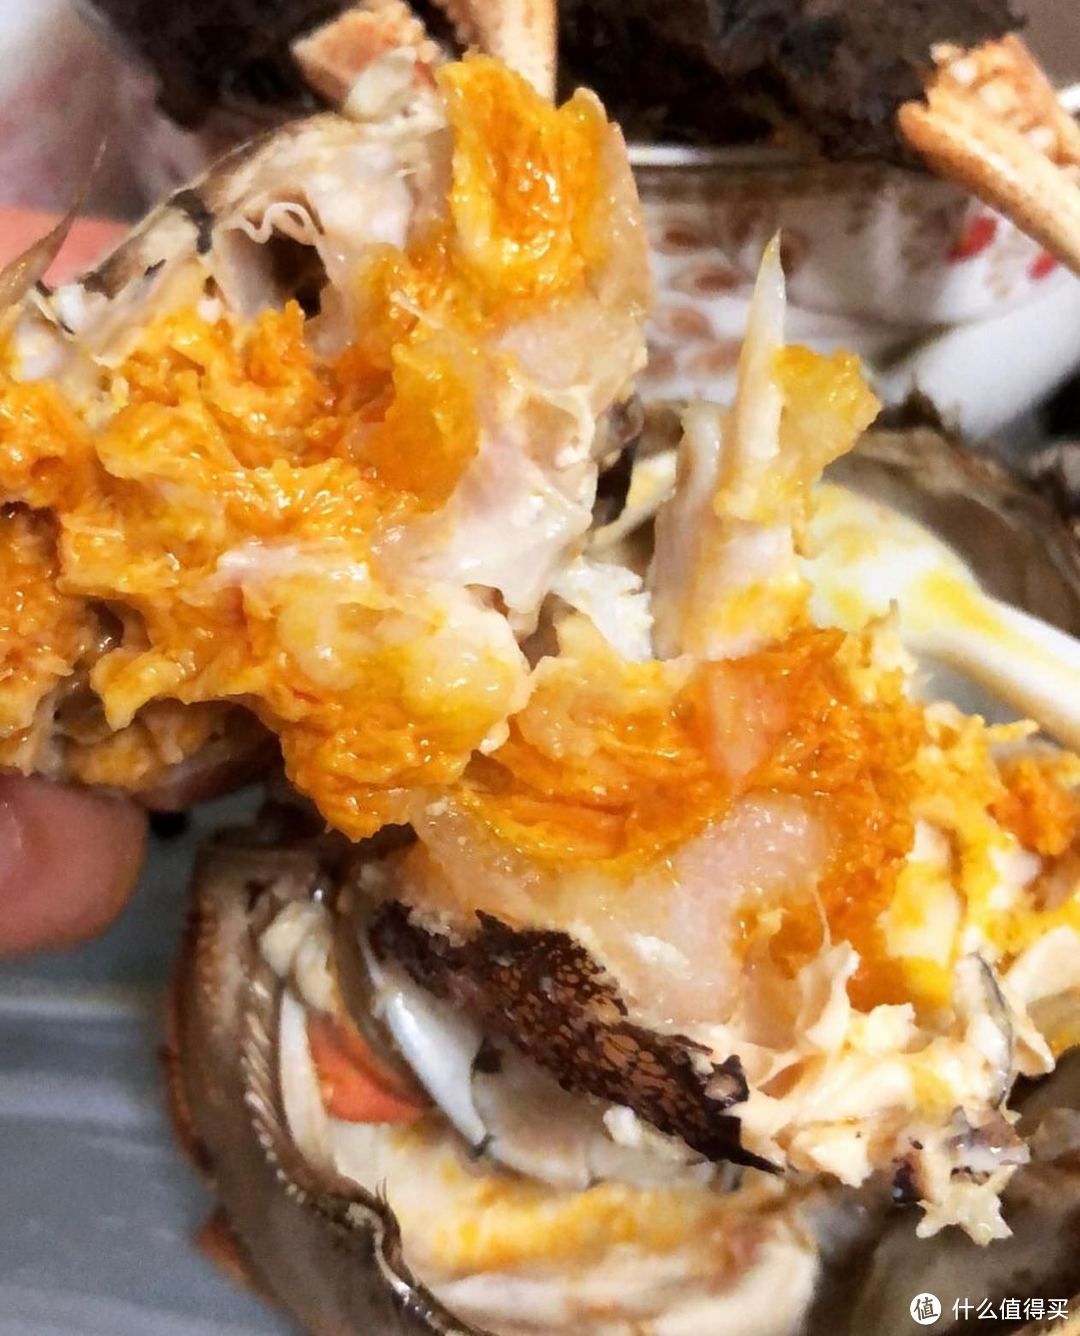 自己烹饪大闸蟹，品尝这难得一见的美味。